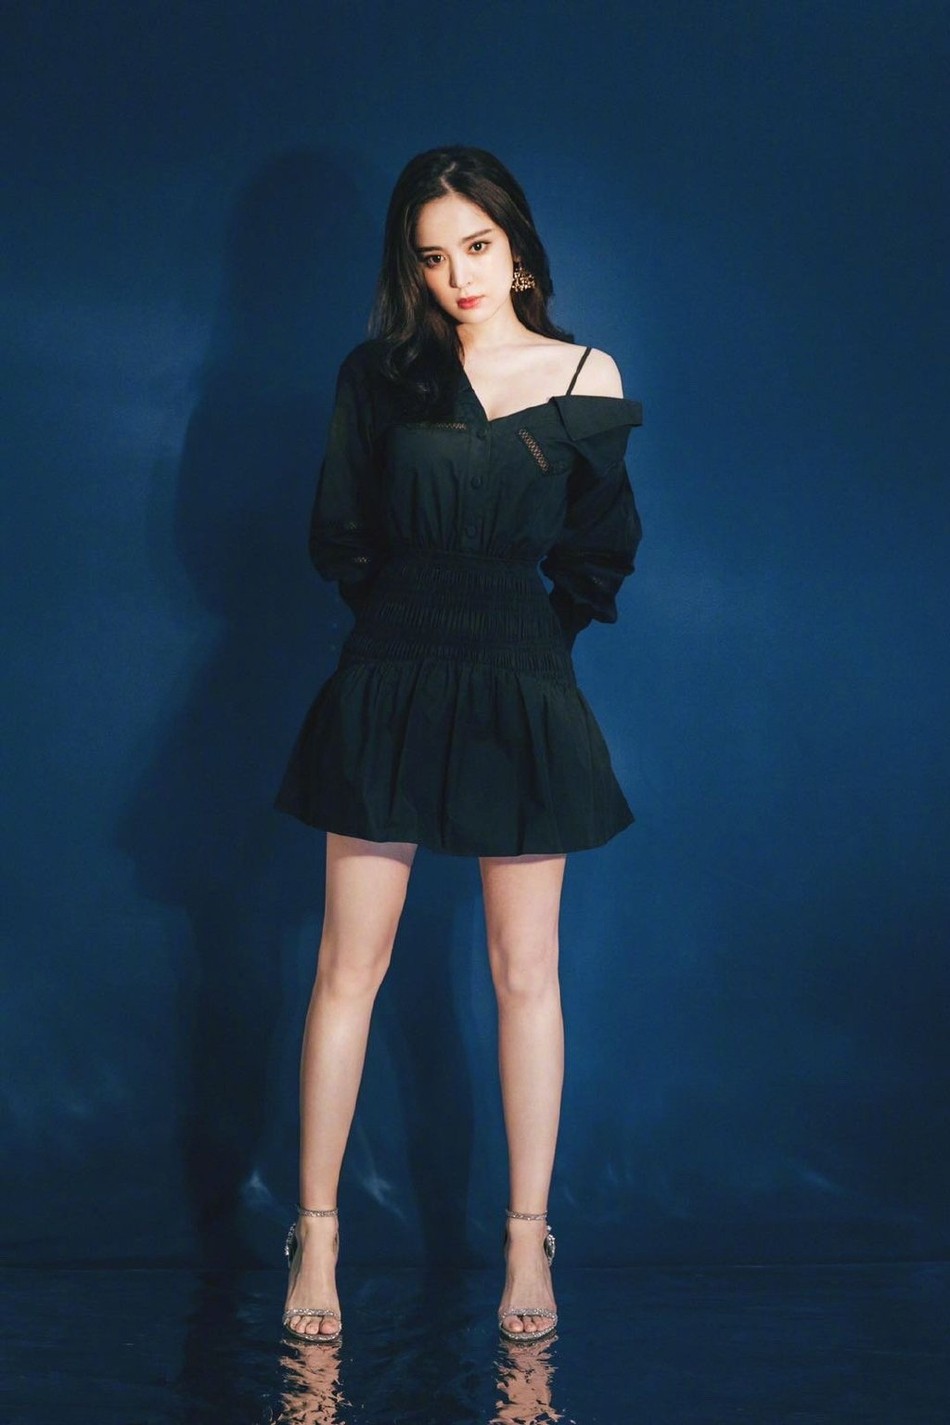 2020年5月25日福利,古力娜扎黑色露肩裙优雅写真